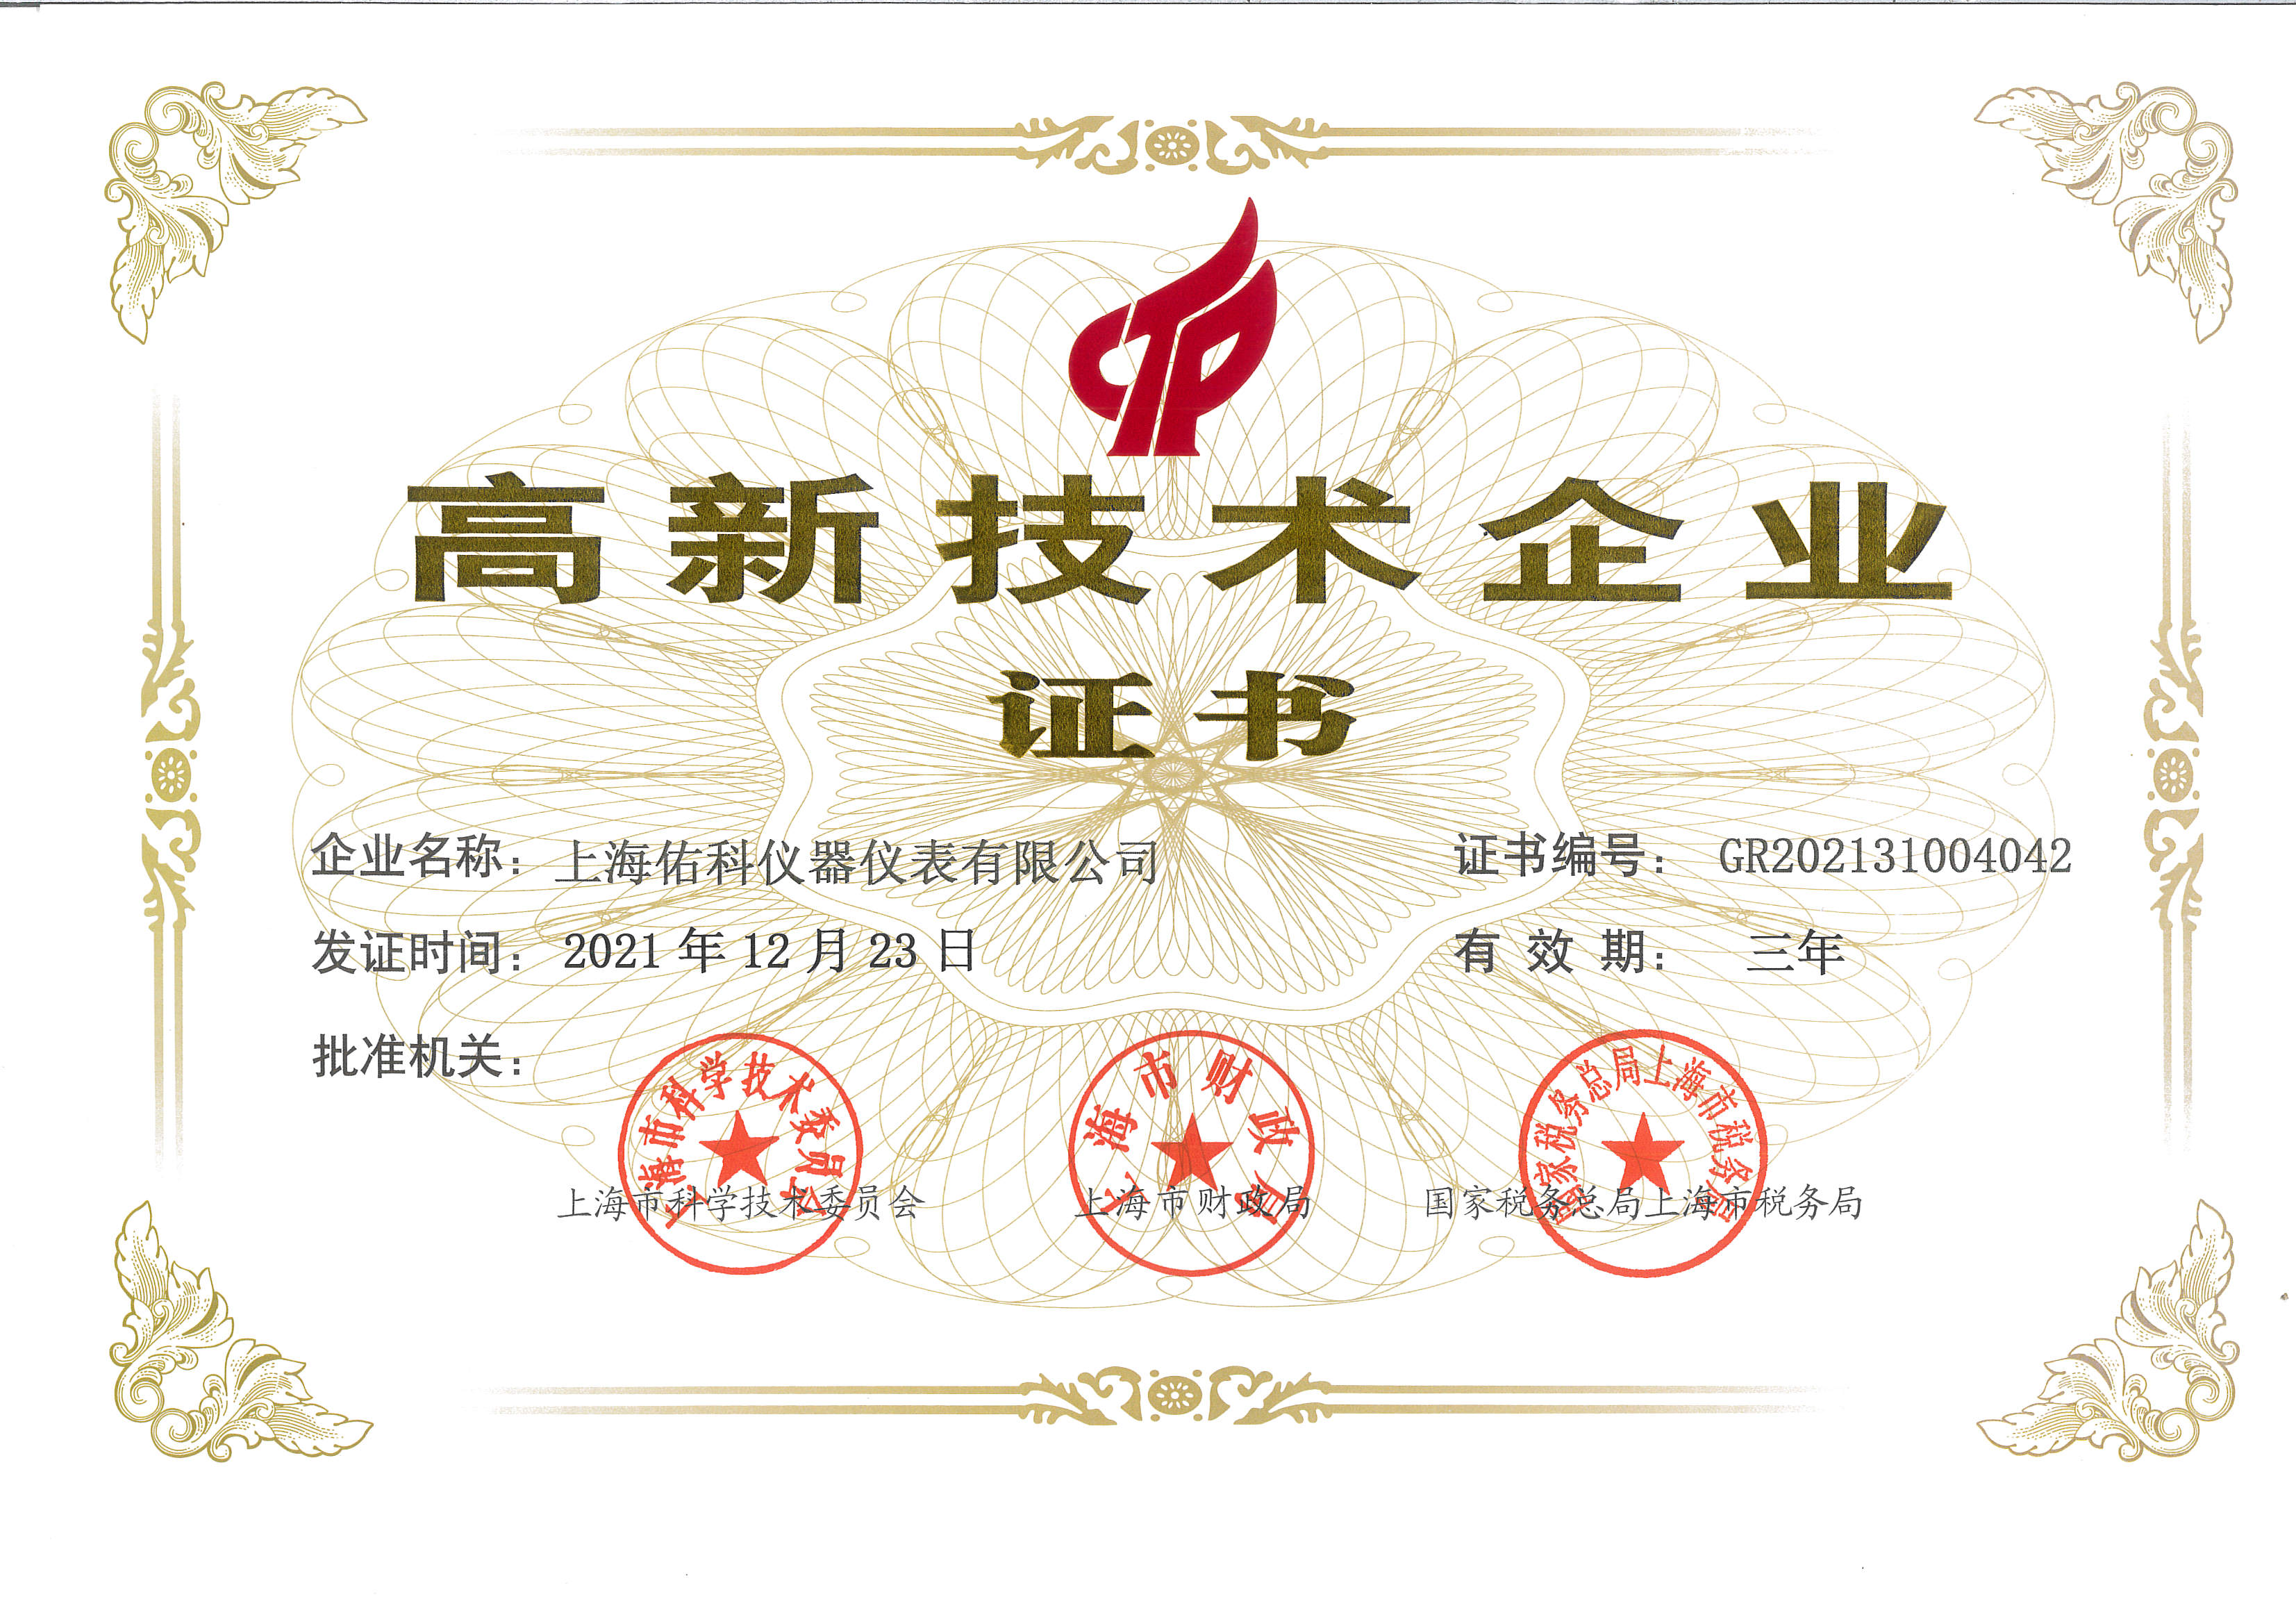 009 最新高新技术企业证书.jpg